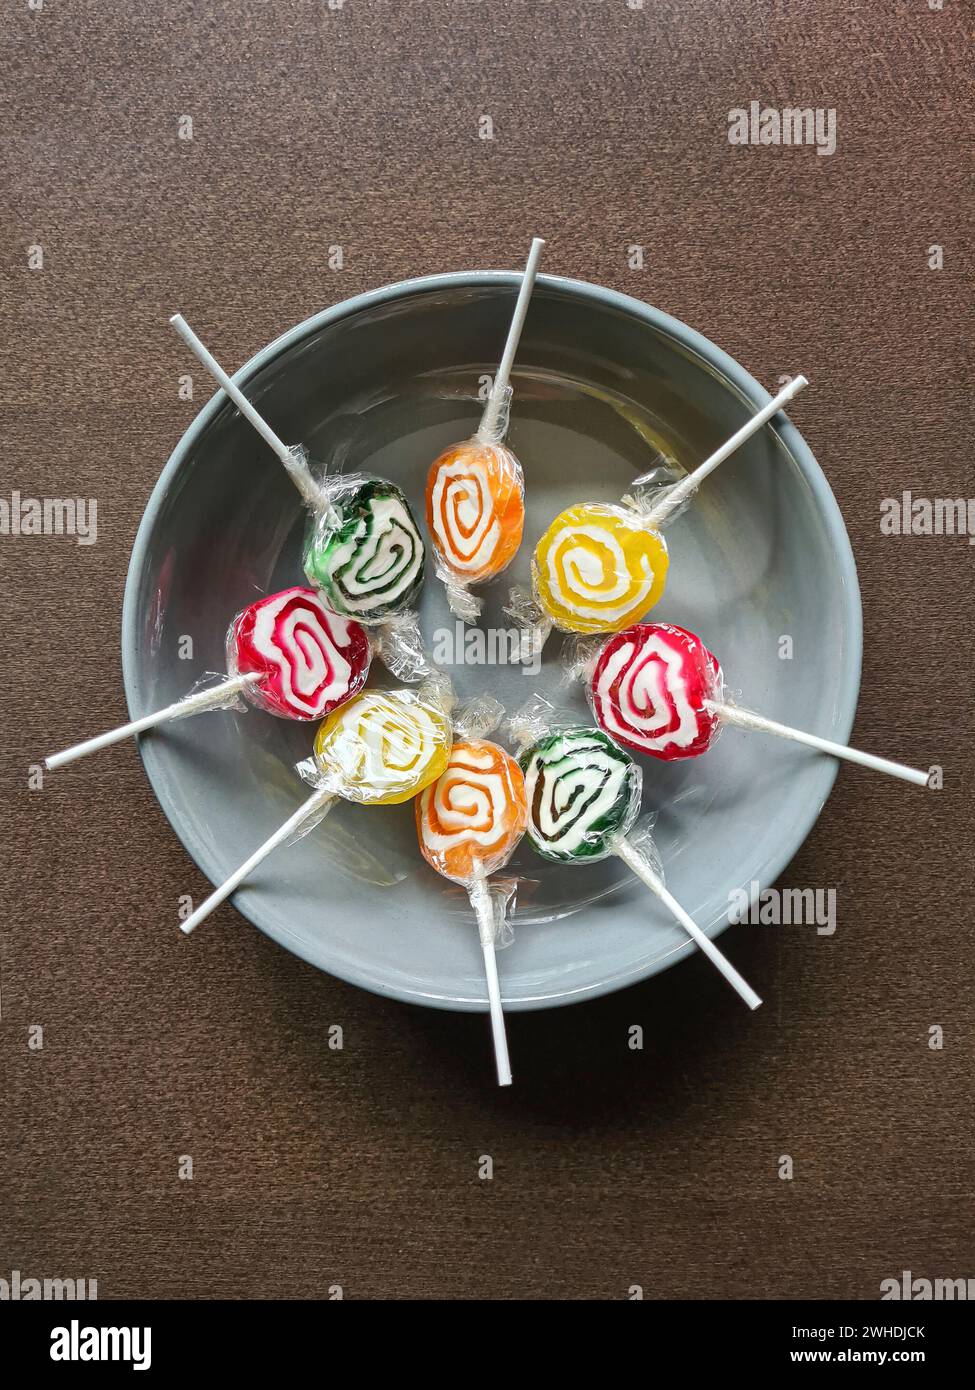 Huit sucettes colorées sont encore enveloppées dans une feuille de plastique en cercle dans un bol gris Banque D'Images